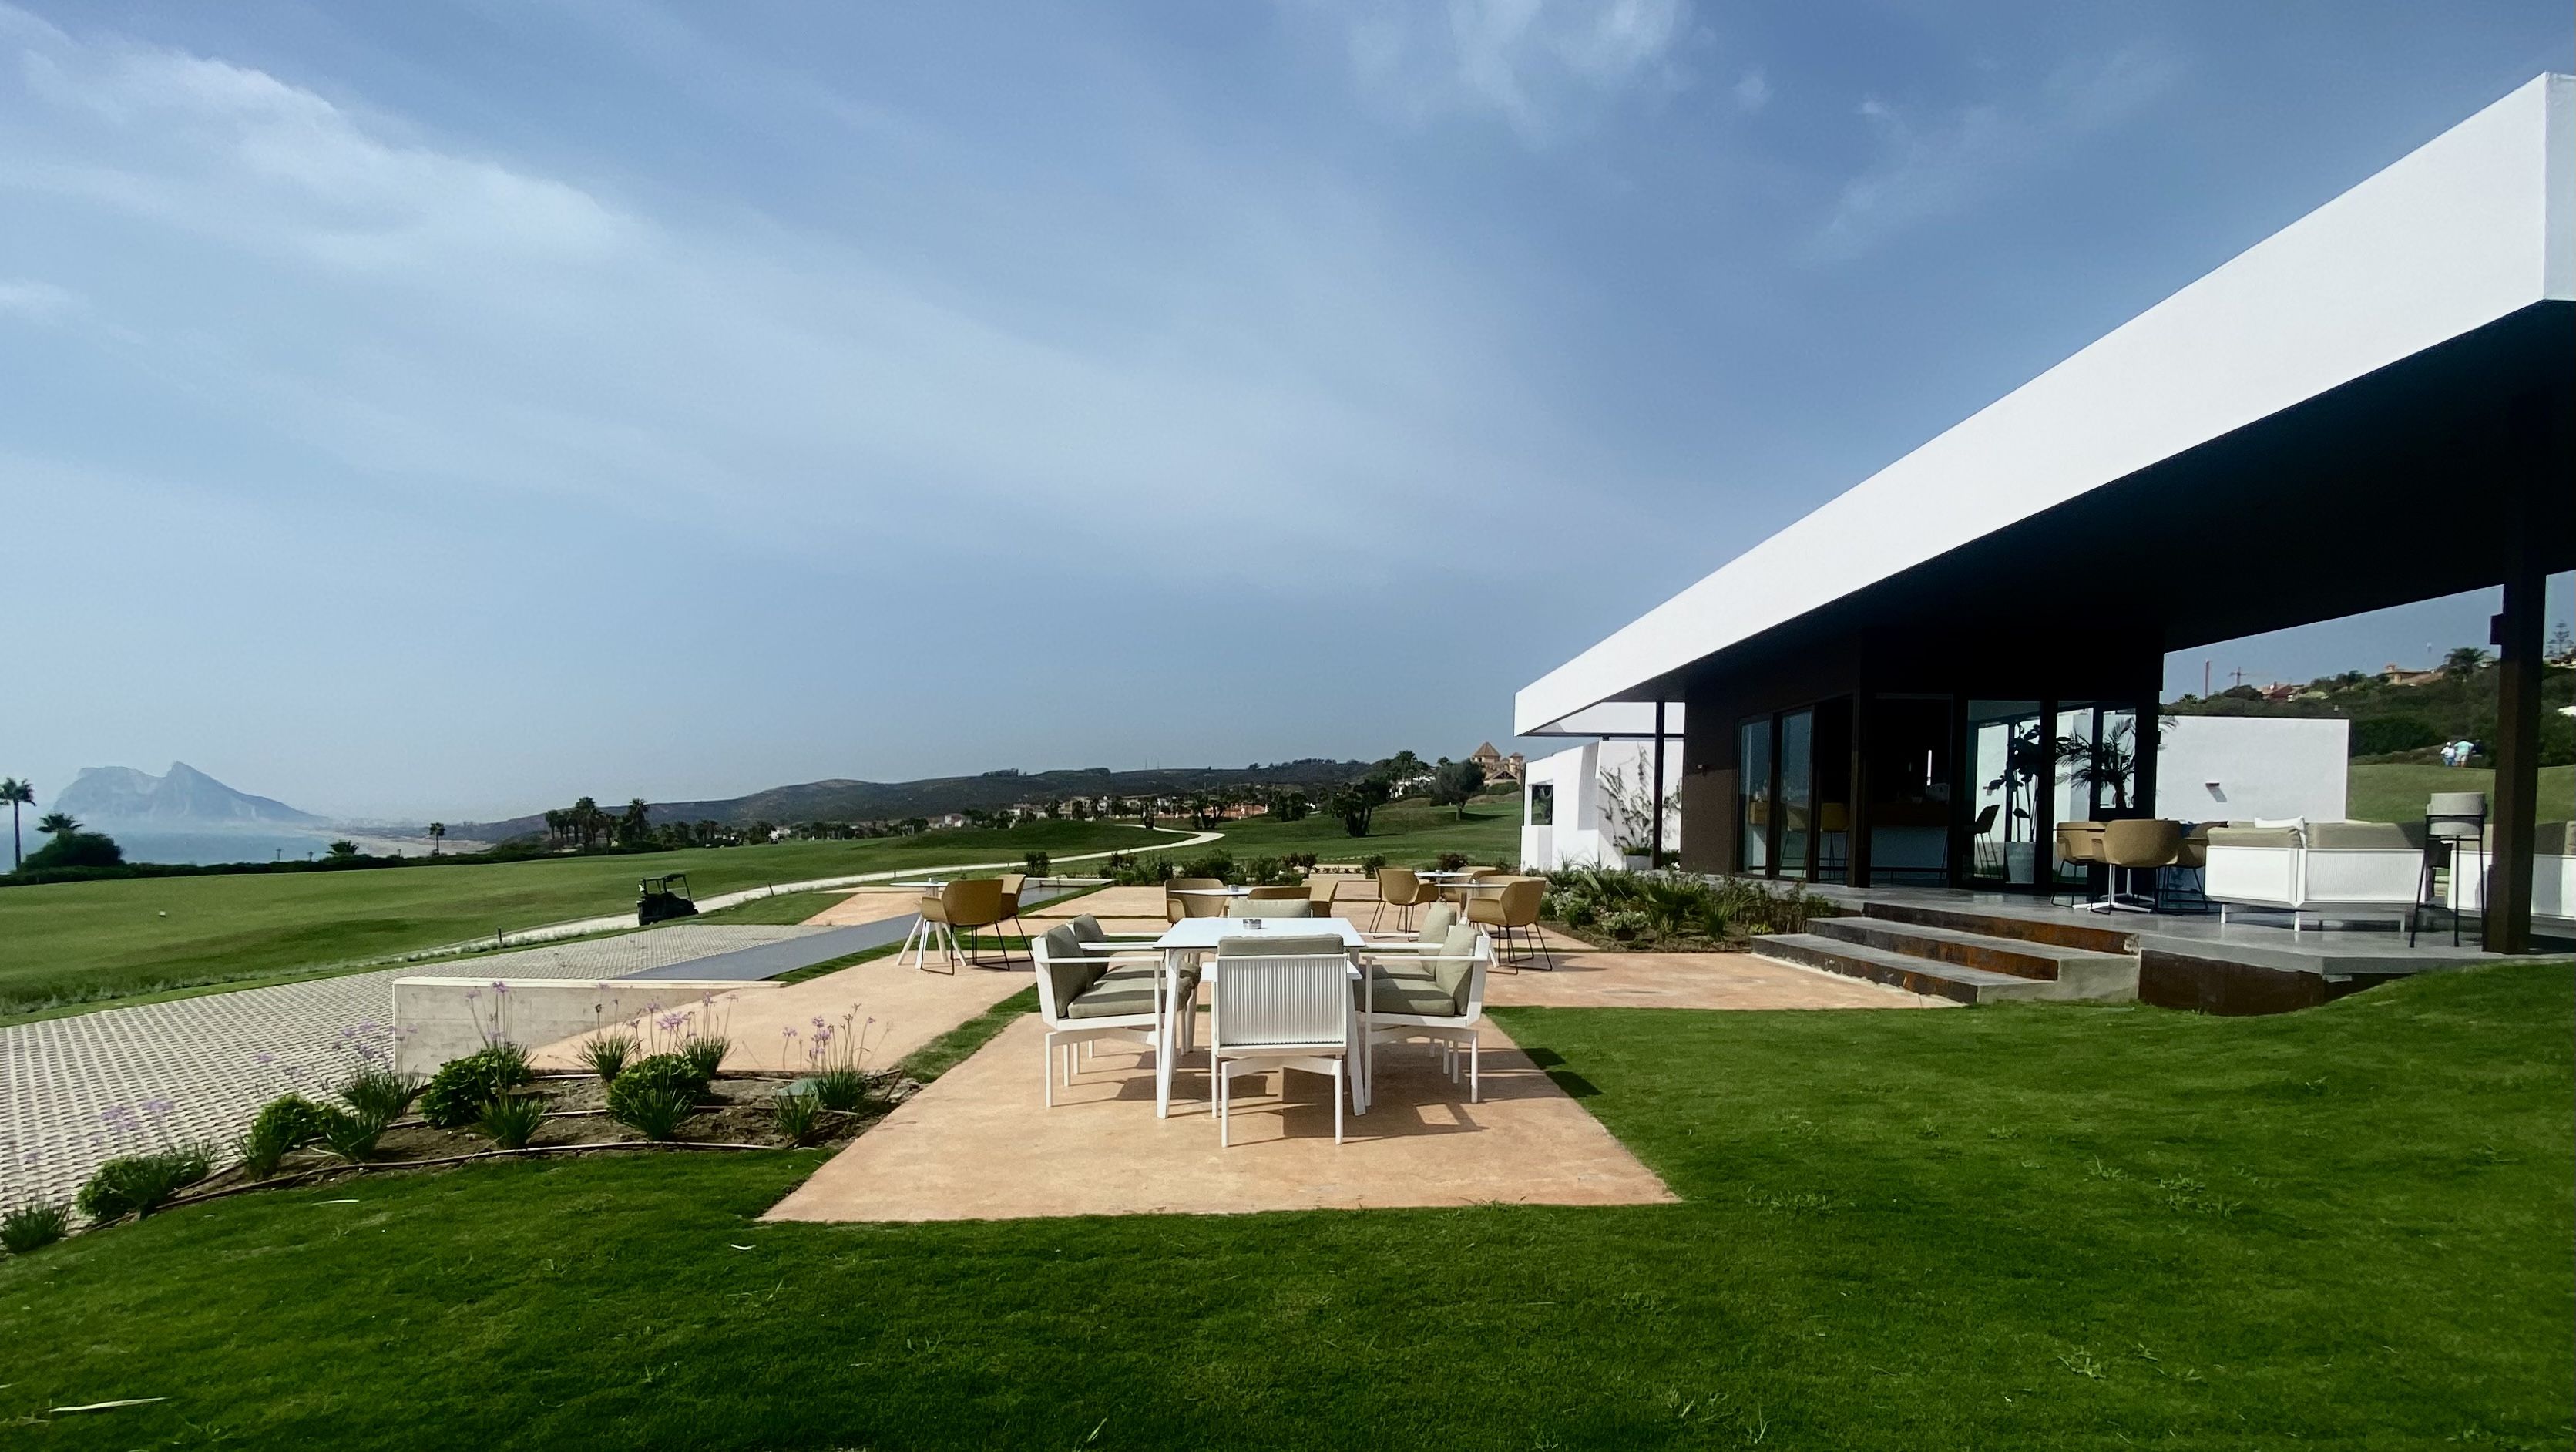 La Hacienda Links Golf Resort abre una nueva casa club en mitad del recorrido